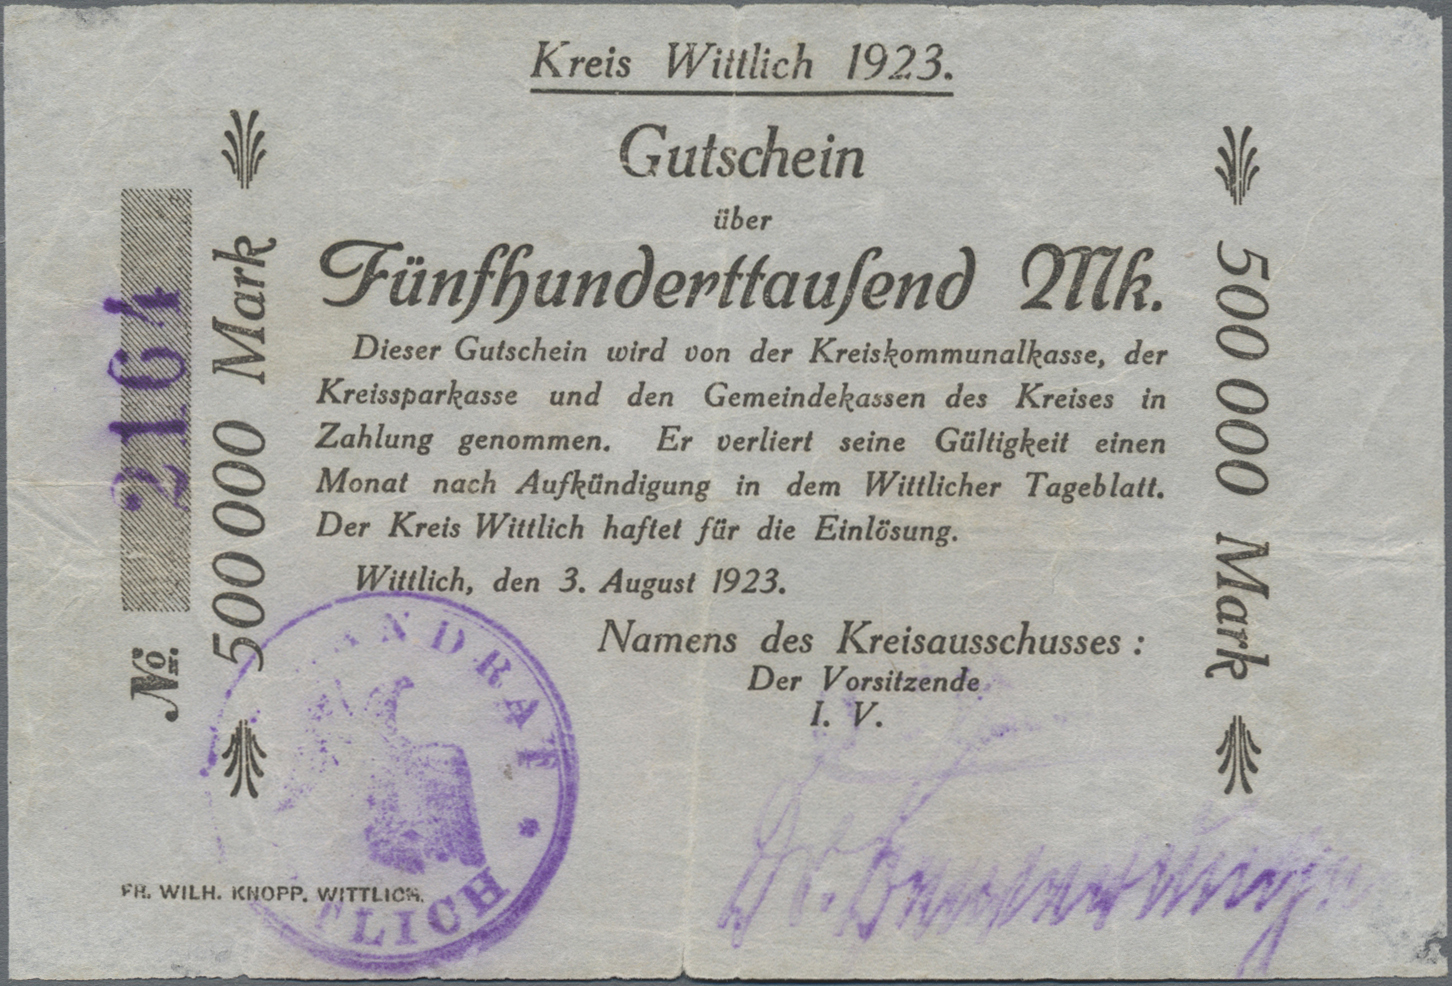 Lot 00625 - Deutschland - Notgeld - Rheinland | Banknoten  -  Auktionshaus Christoph Gärtner GmbH & Co. KG 54th AUCTION - Day 1 Coins & Banknotes